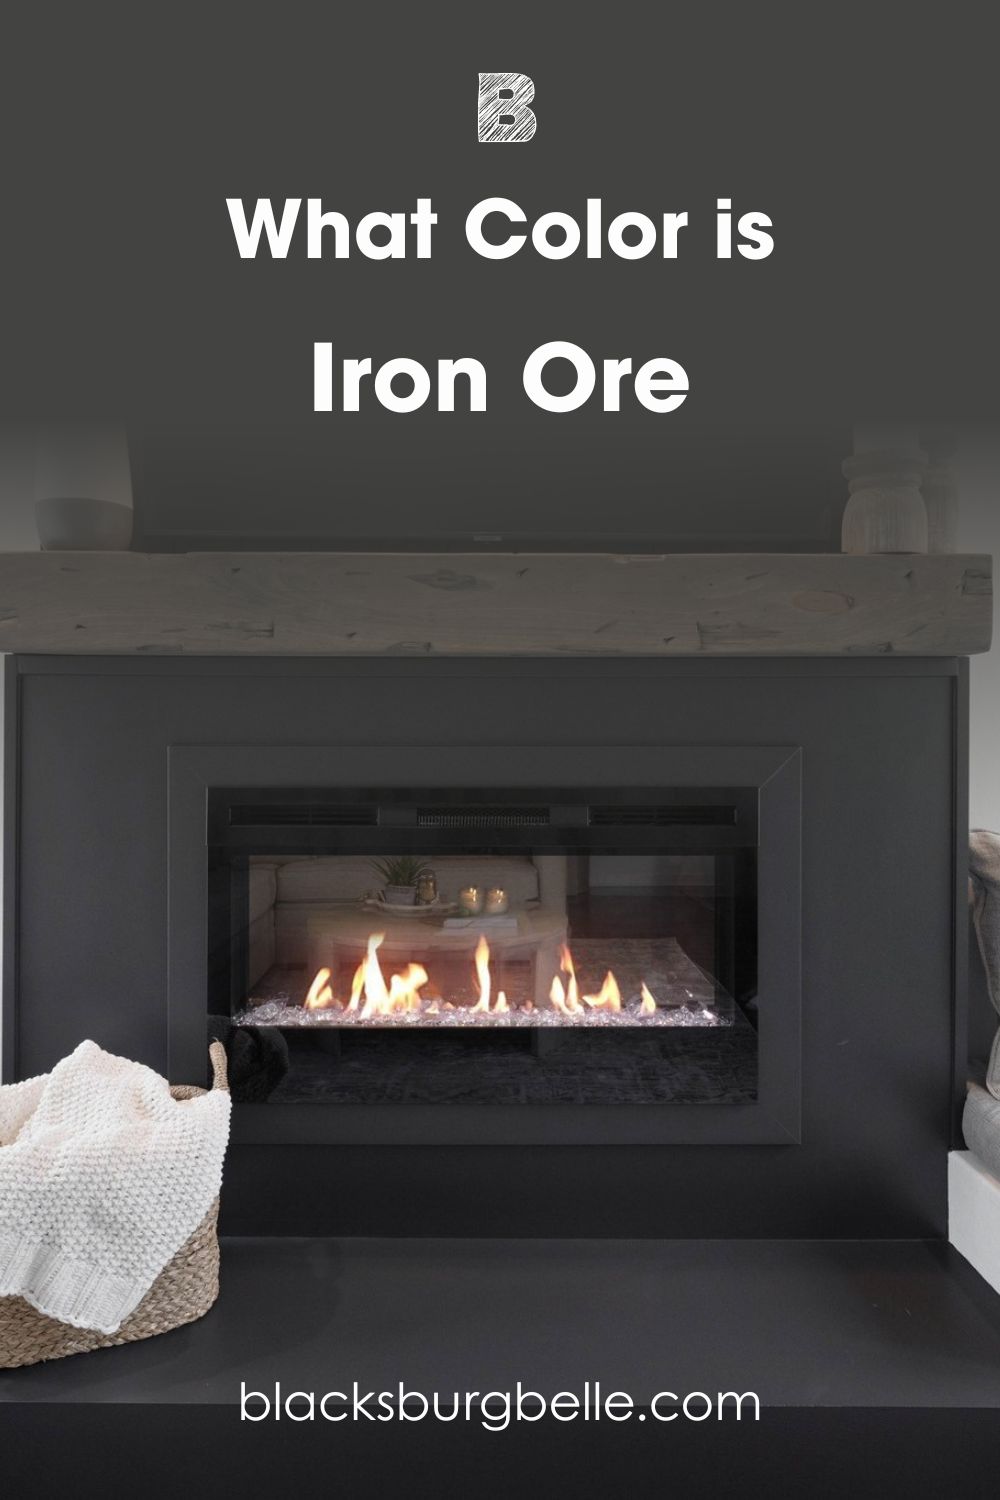 A Visual Comparison of Iron Ore